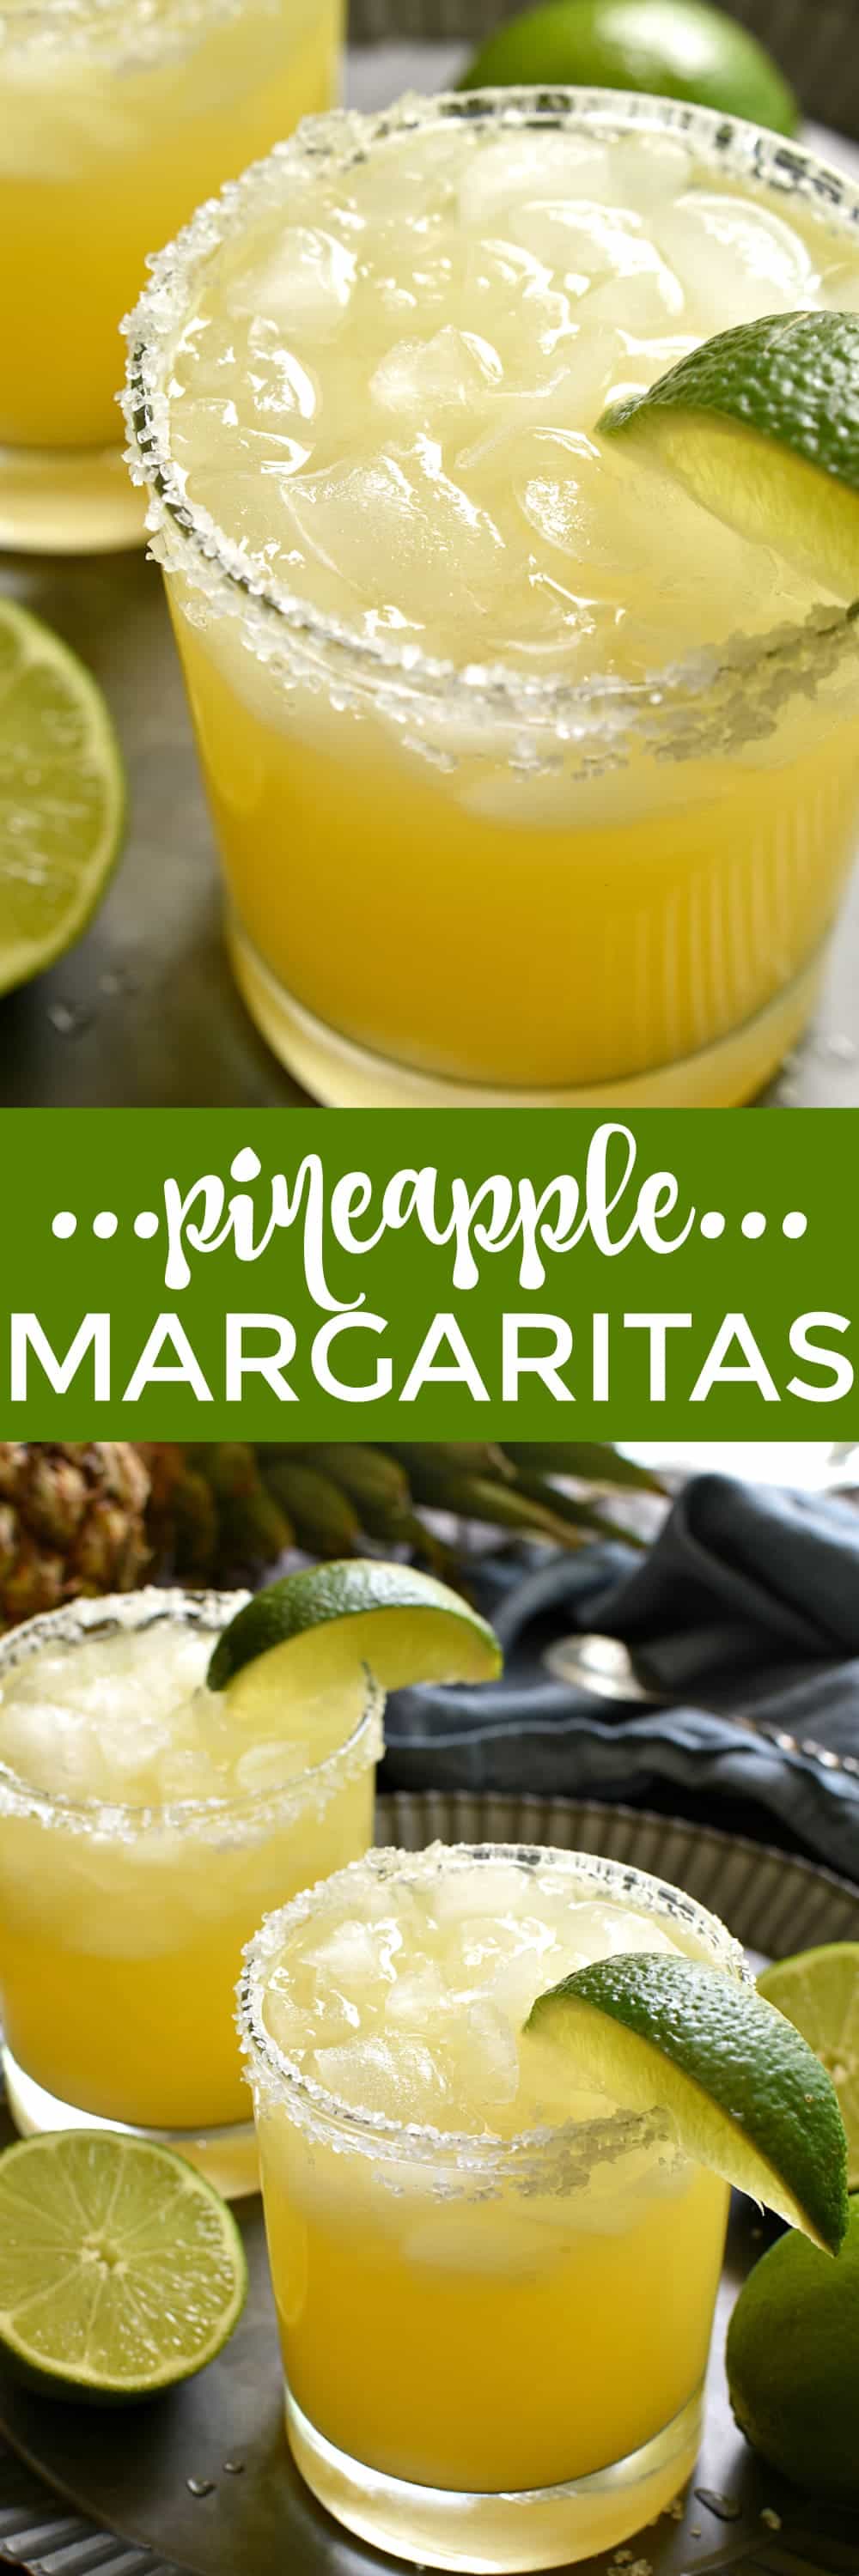  Ces Margaritas à l'ananas sont une touche délicieusement sucrée et rafraîchissante de l'original! Fabriqué avec seulement 4 ingrédients simples et parfait pour l'happy hour, les week-ends et tout l'été!